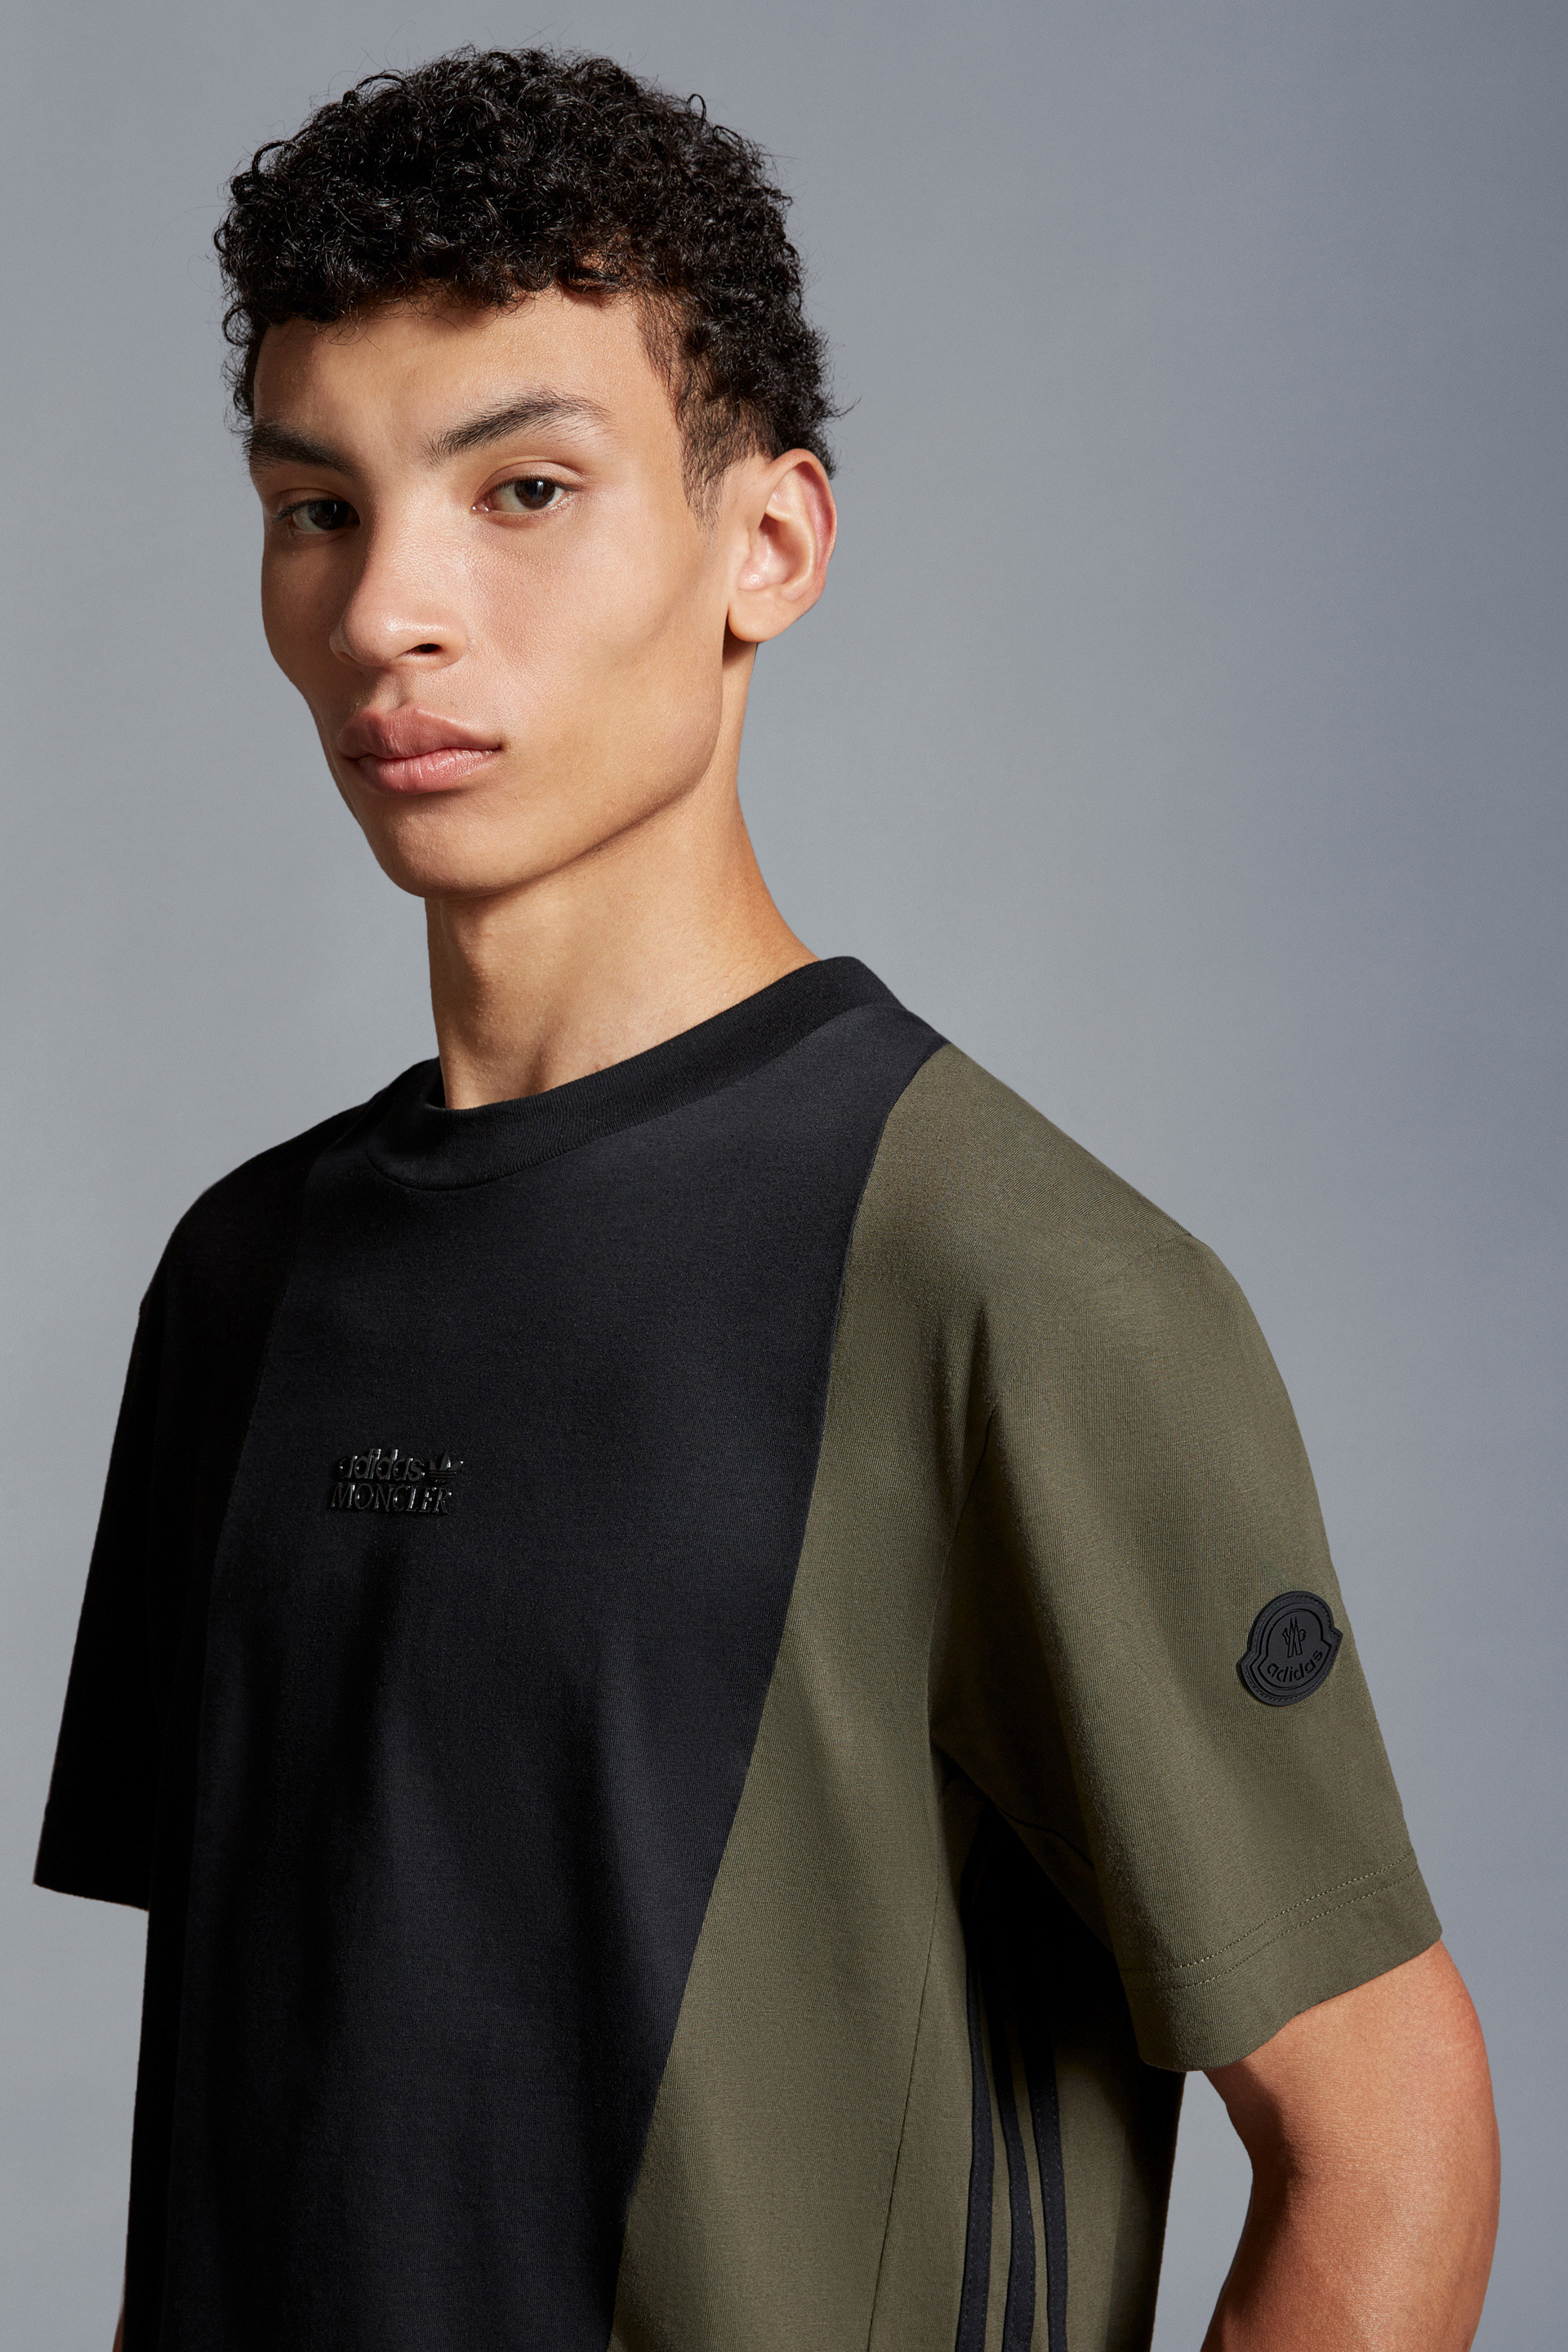 ブラック& グリーン Tシャツ : Moncler x adidas Originals 向けの